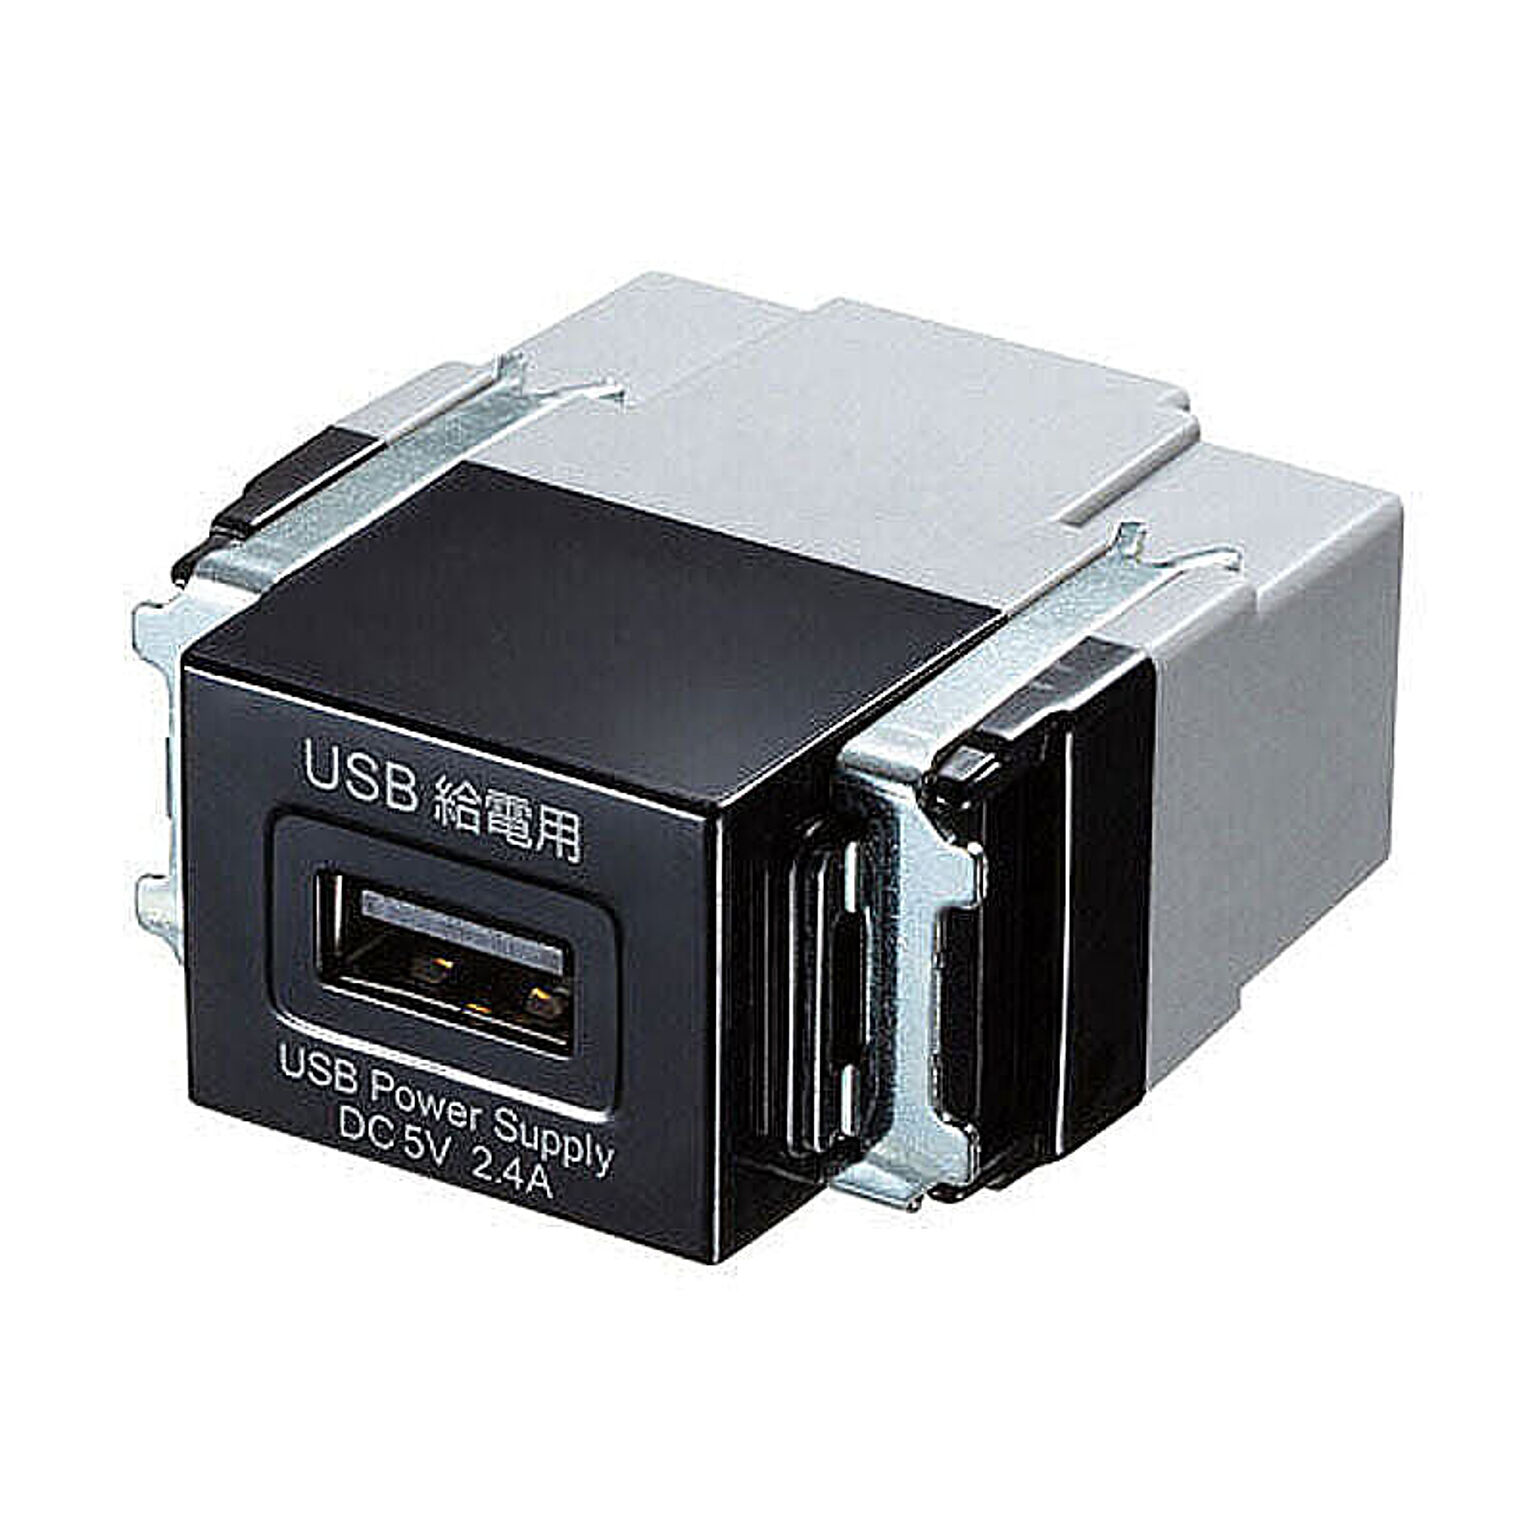 サンワサプライ 埋込USB給電用コンセント(1ポート用) TAP-KJUSB1BK 管理No. 4969887824641